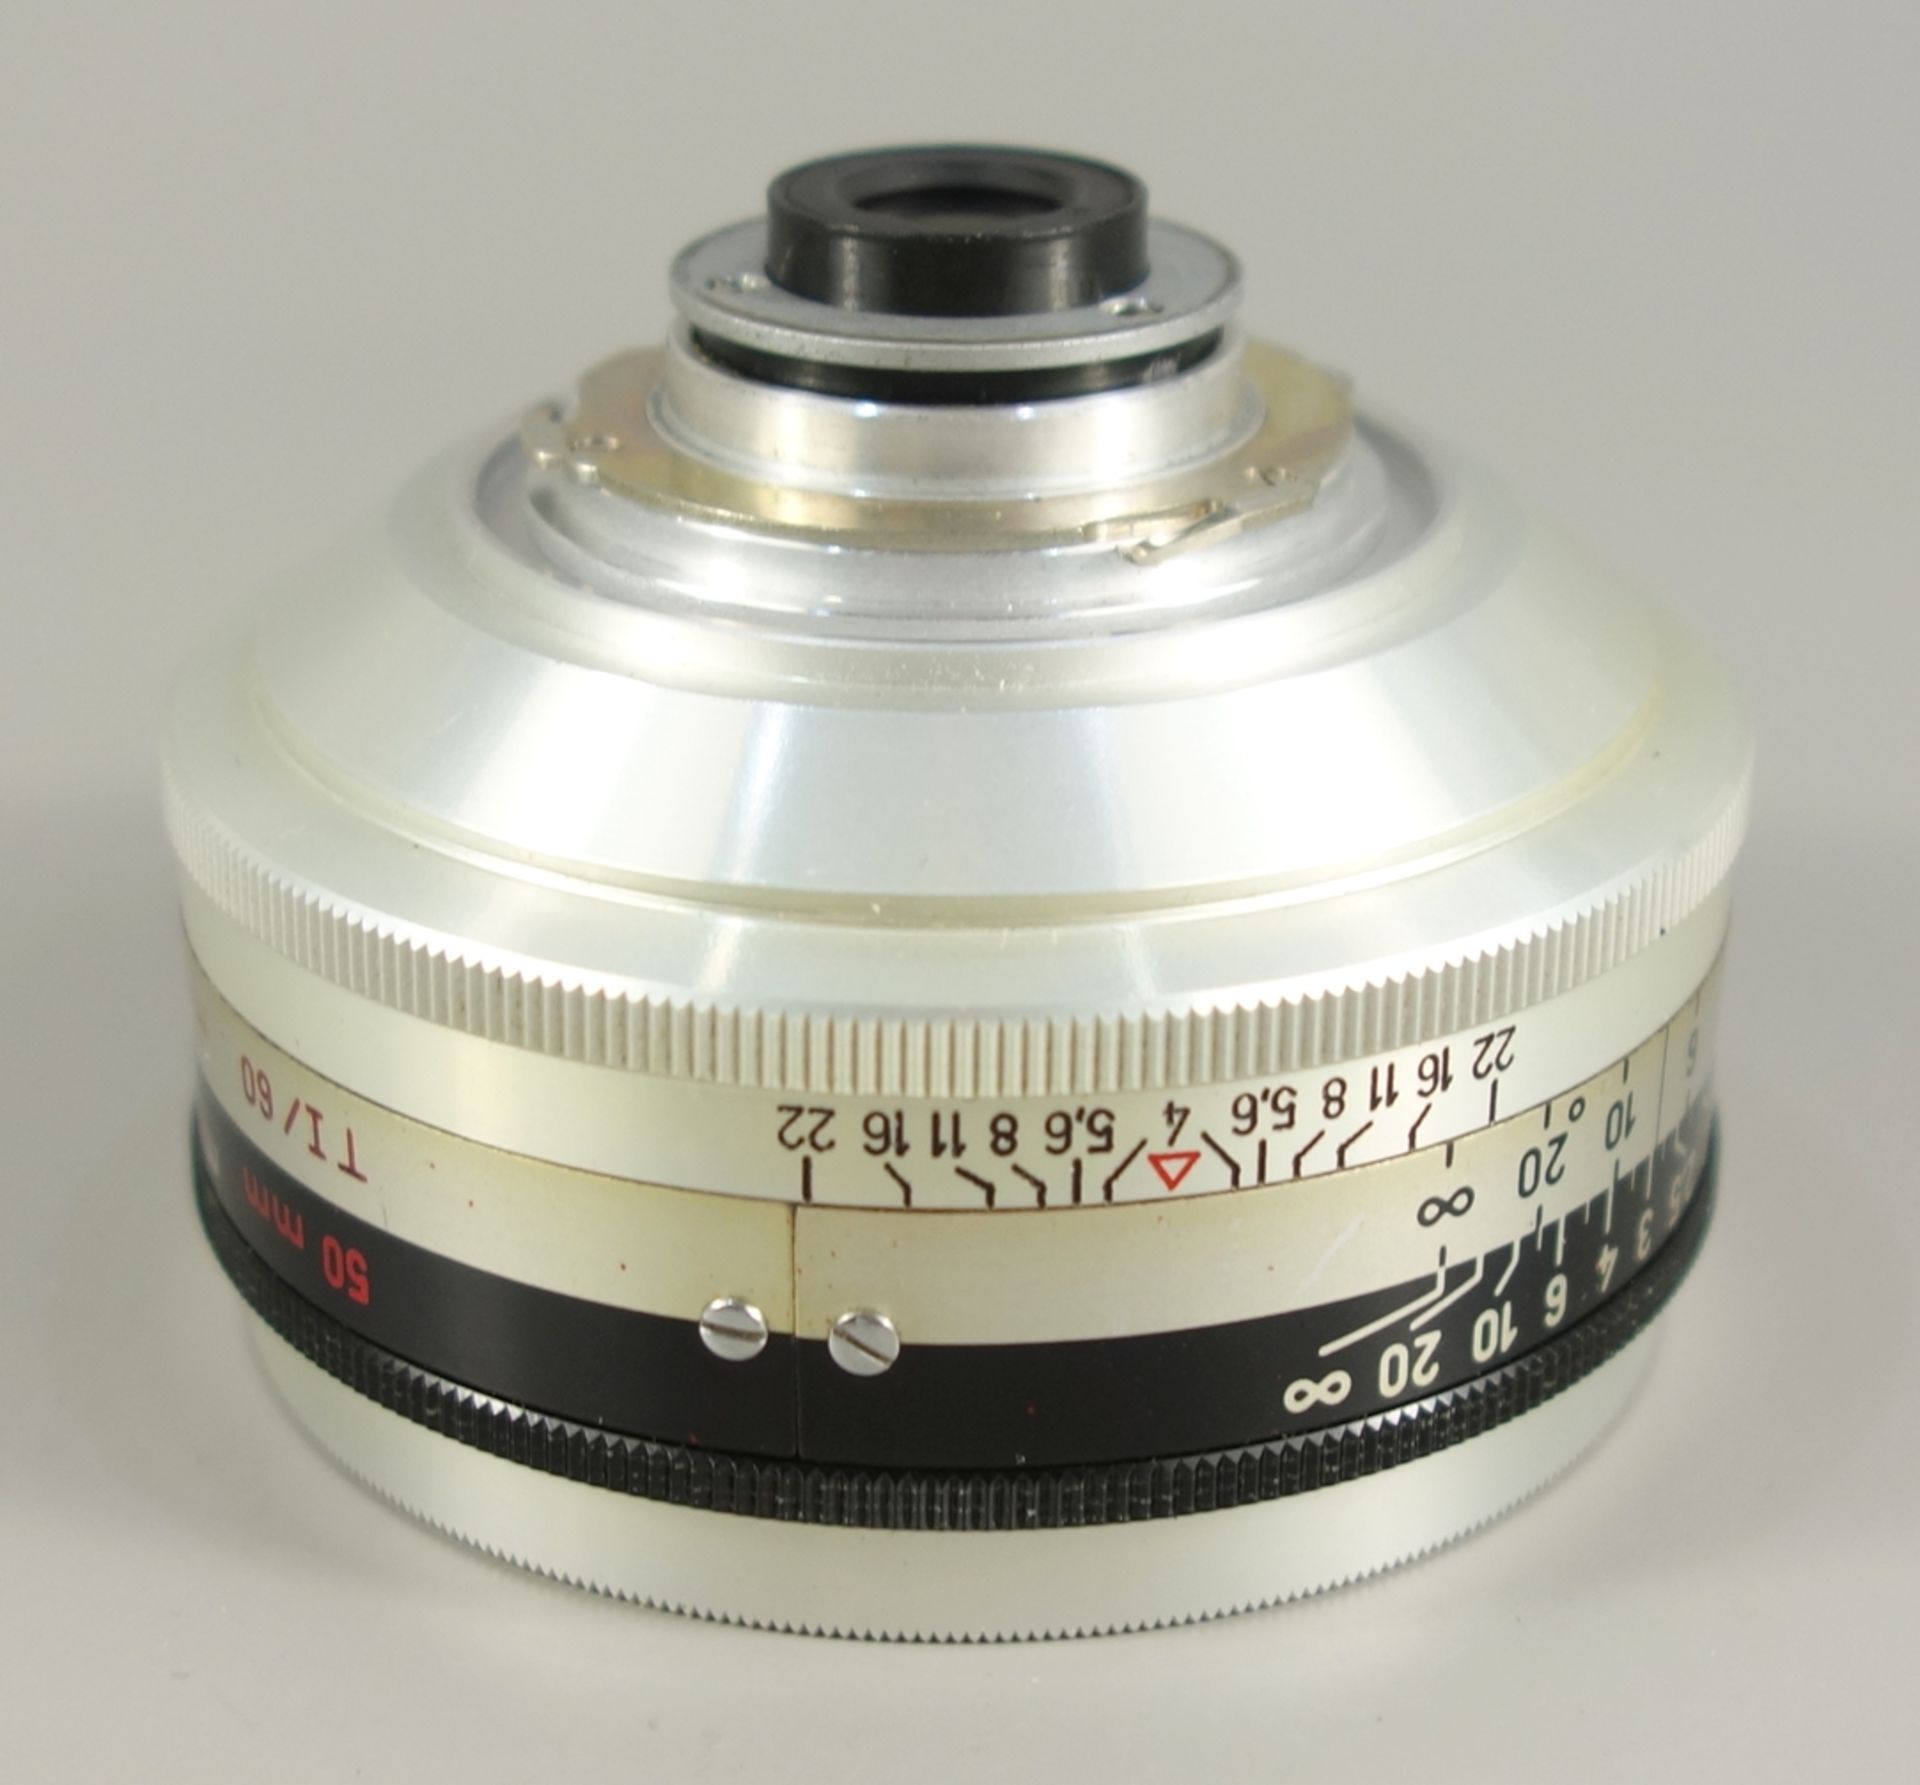 Tele-Objektiv für Kodak Retina, Schneider-Kreuznach Retina Longar-Xenon C 1:4/80 mm, 1954-60, - Bild 4 aus 4